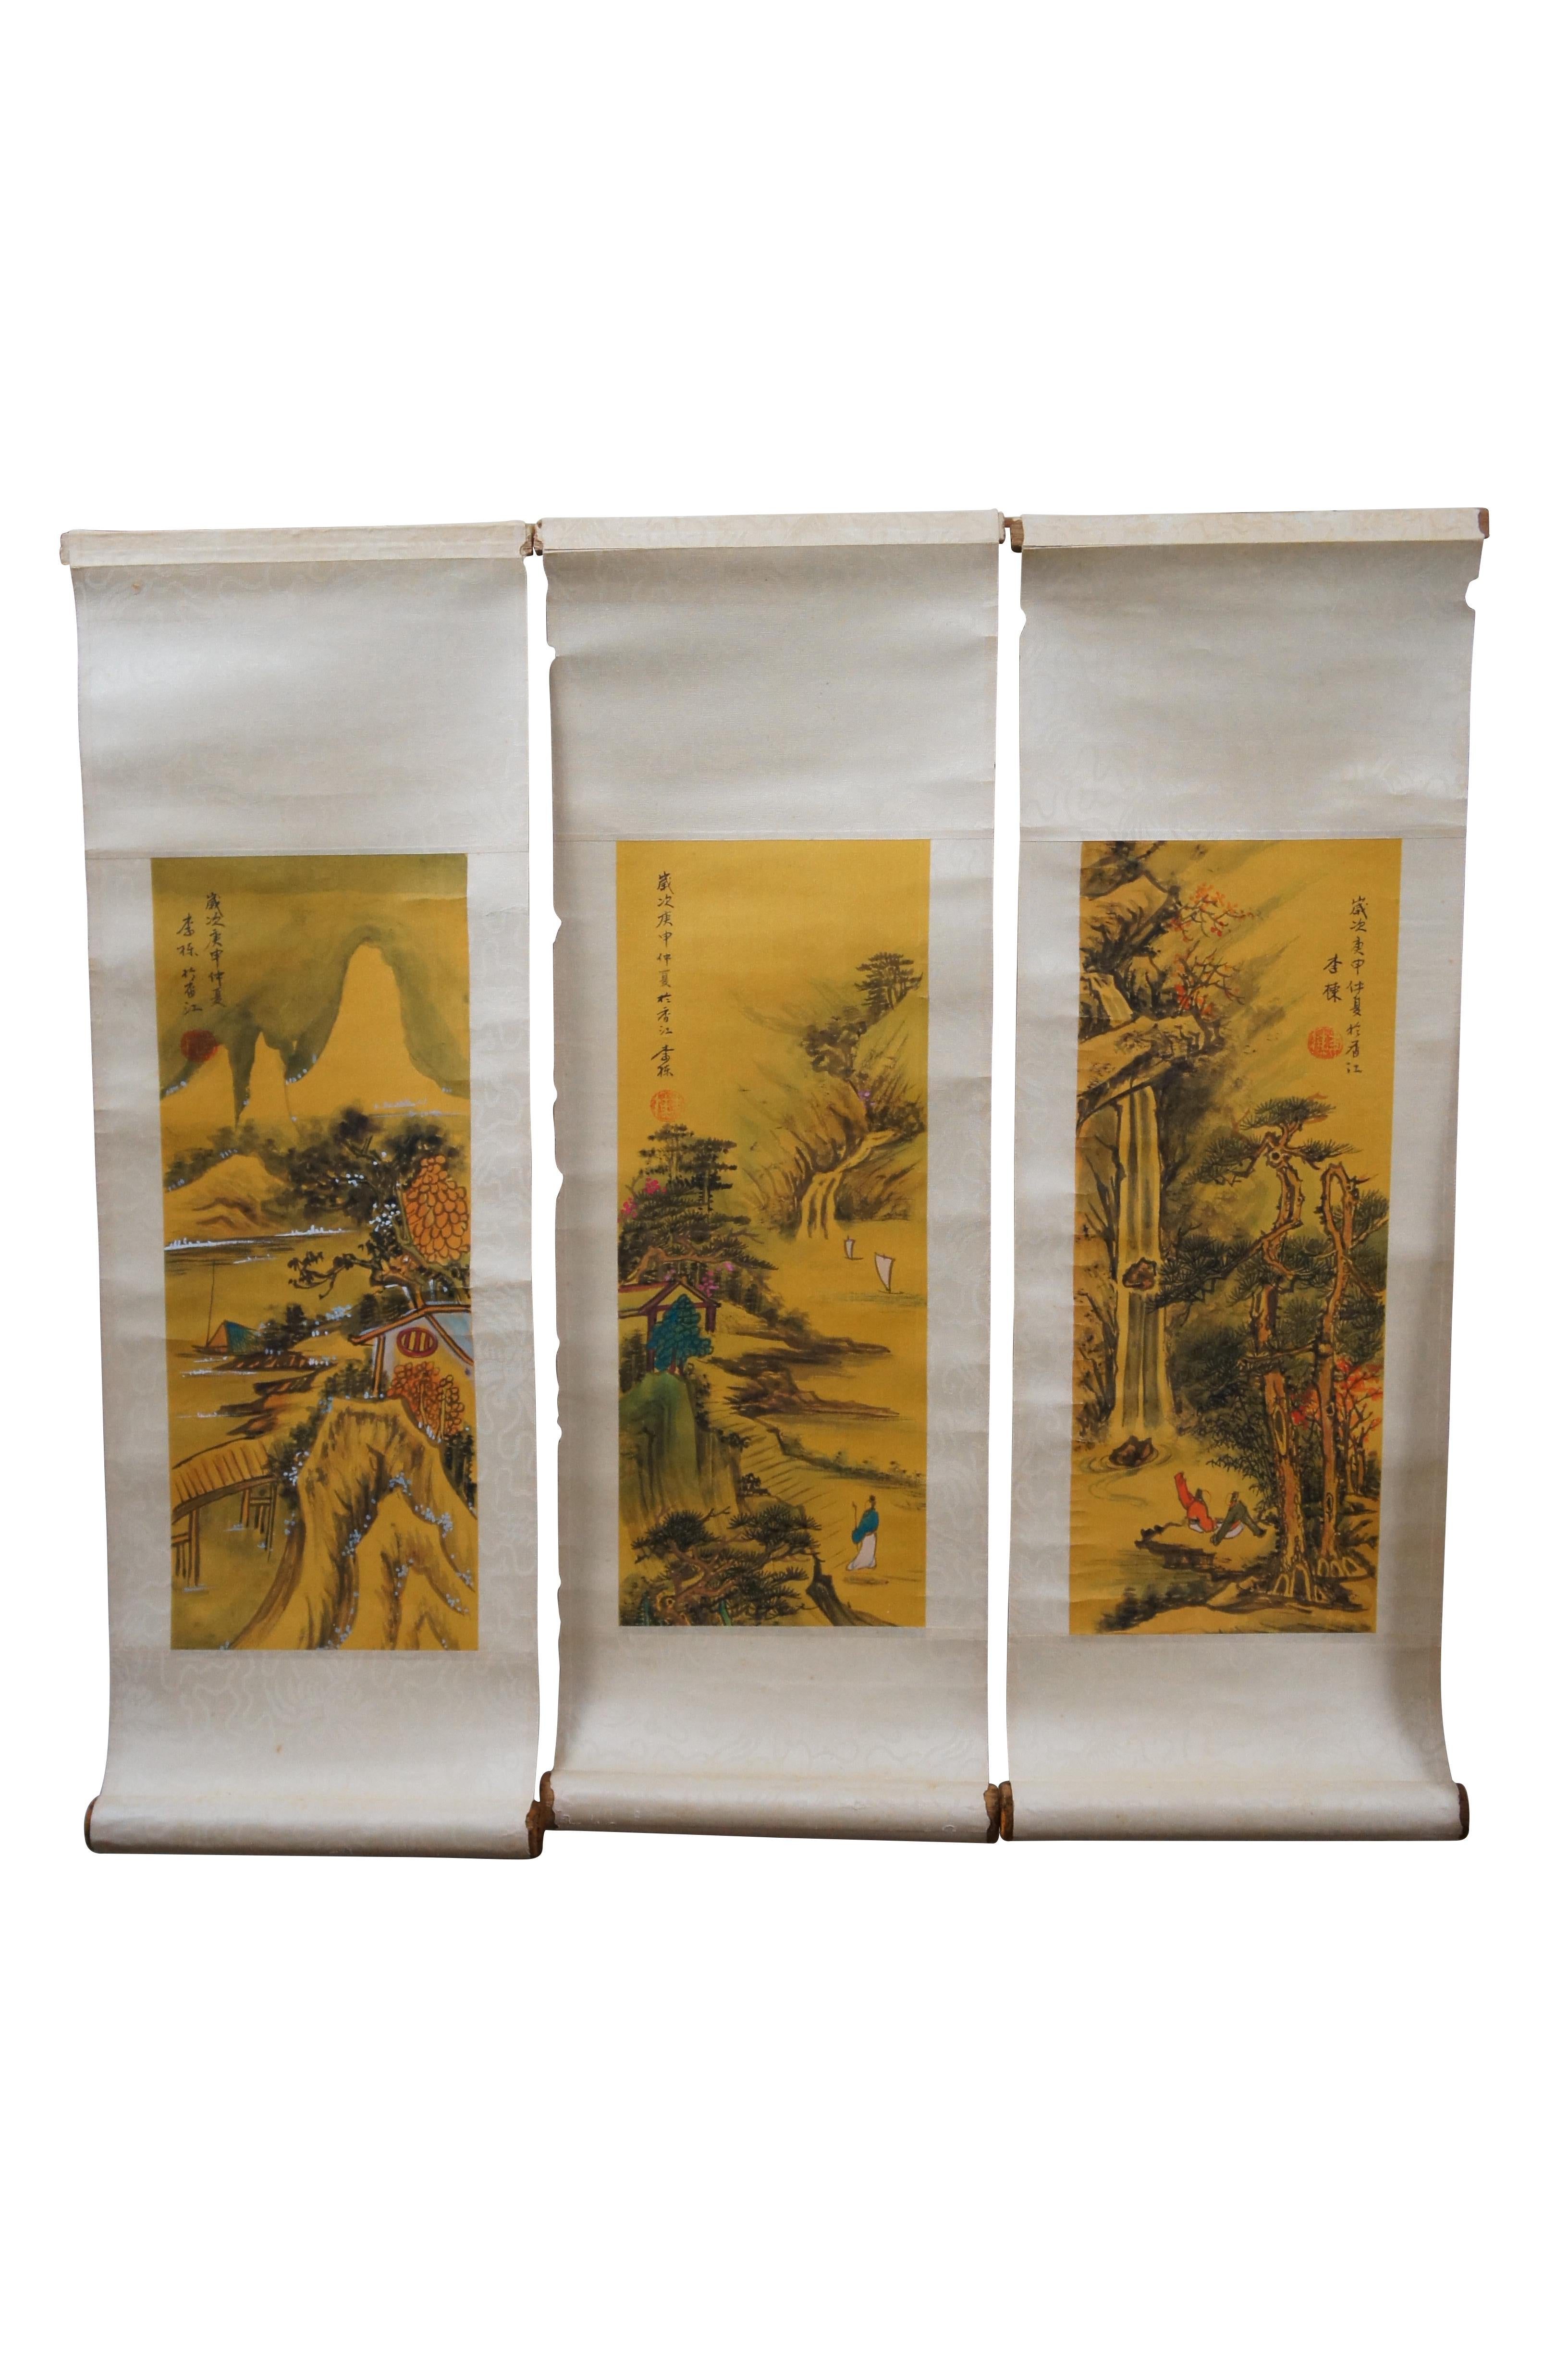 Fünf Vintage-Wandrollen, die eine Reihe von malerischen chinesischen / japanischen Landschaften und Seelandschaften, mit Figuren, Wasserfällen / Flüssen, Bergen und Figuren zeigen.  Handgemalt auf gelbem Papier und aufgezogen auf mit Papier